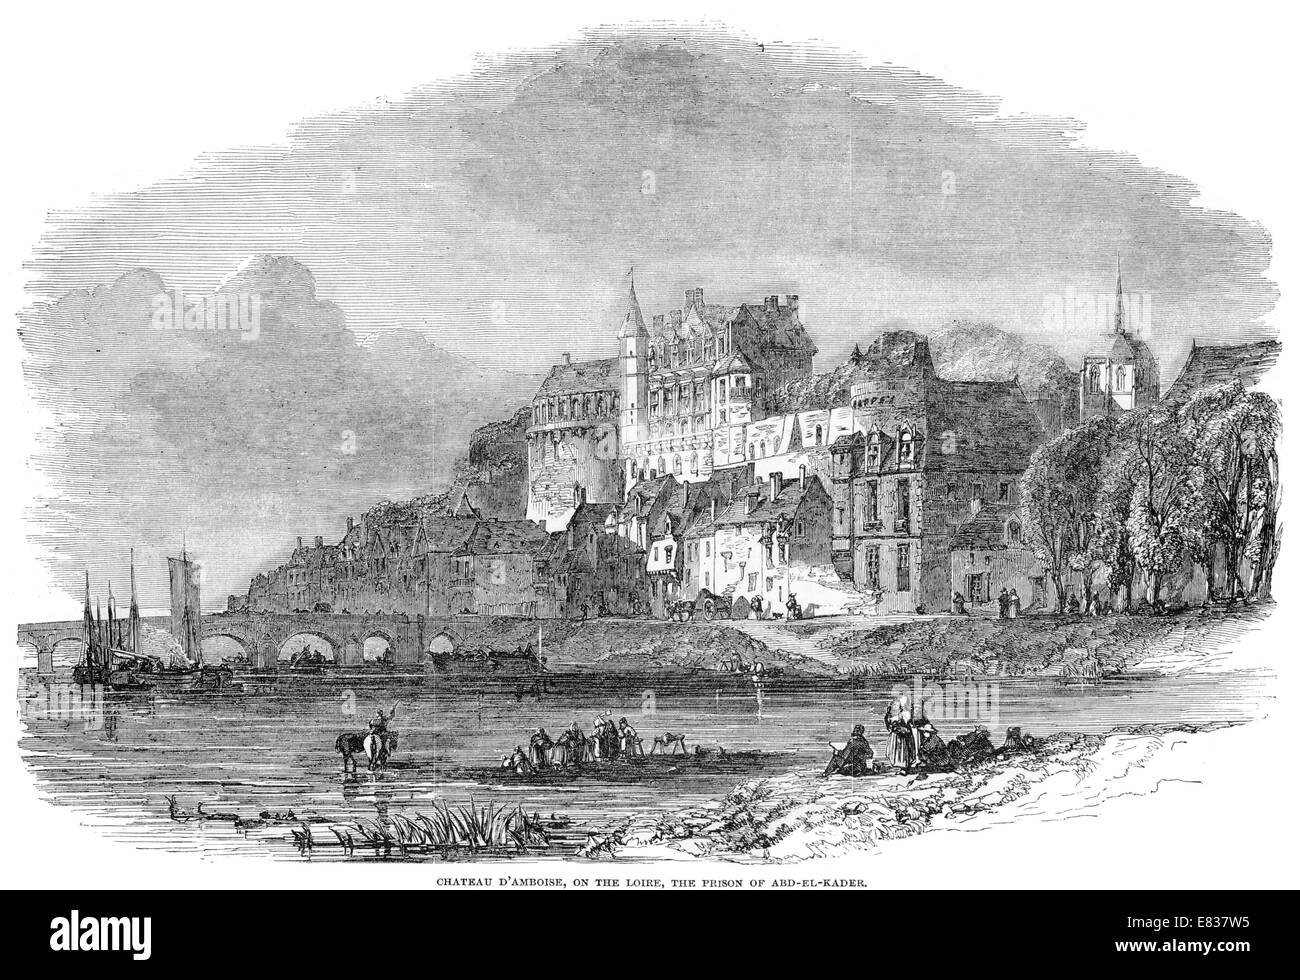 Chateau d'Amboise río Loira prisión de Abd El Kader 1853 Foto de stock